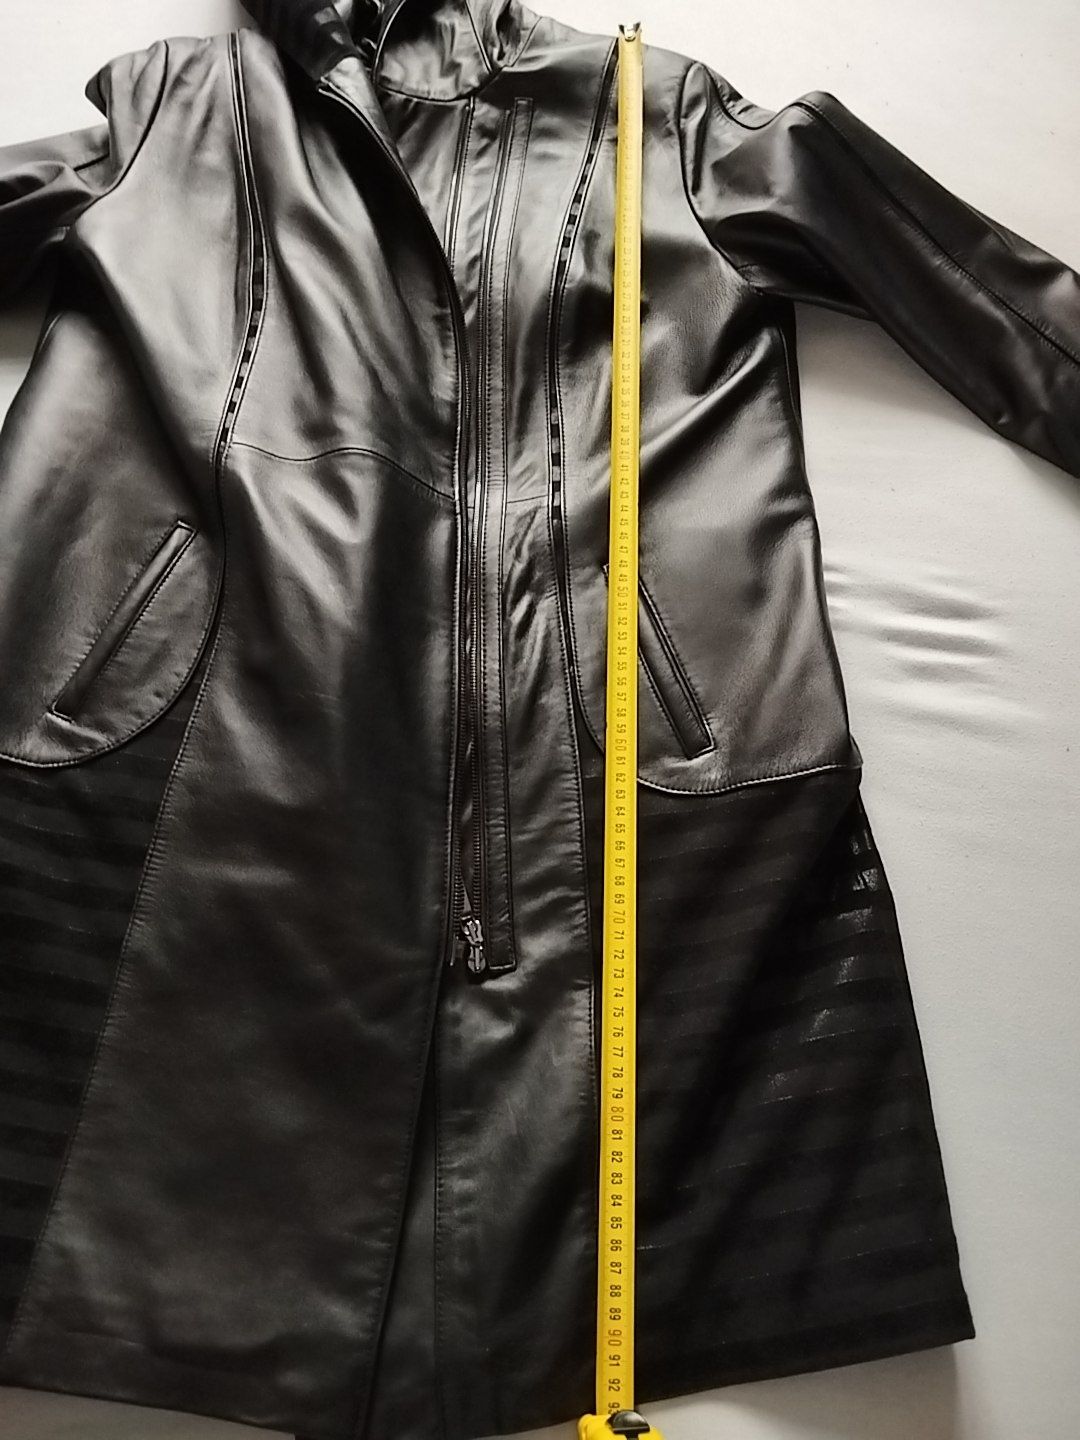 Skórzany płaszcz z kapturem firmy Marbet